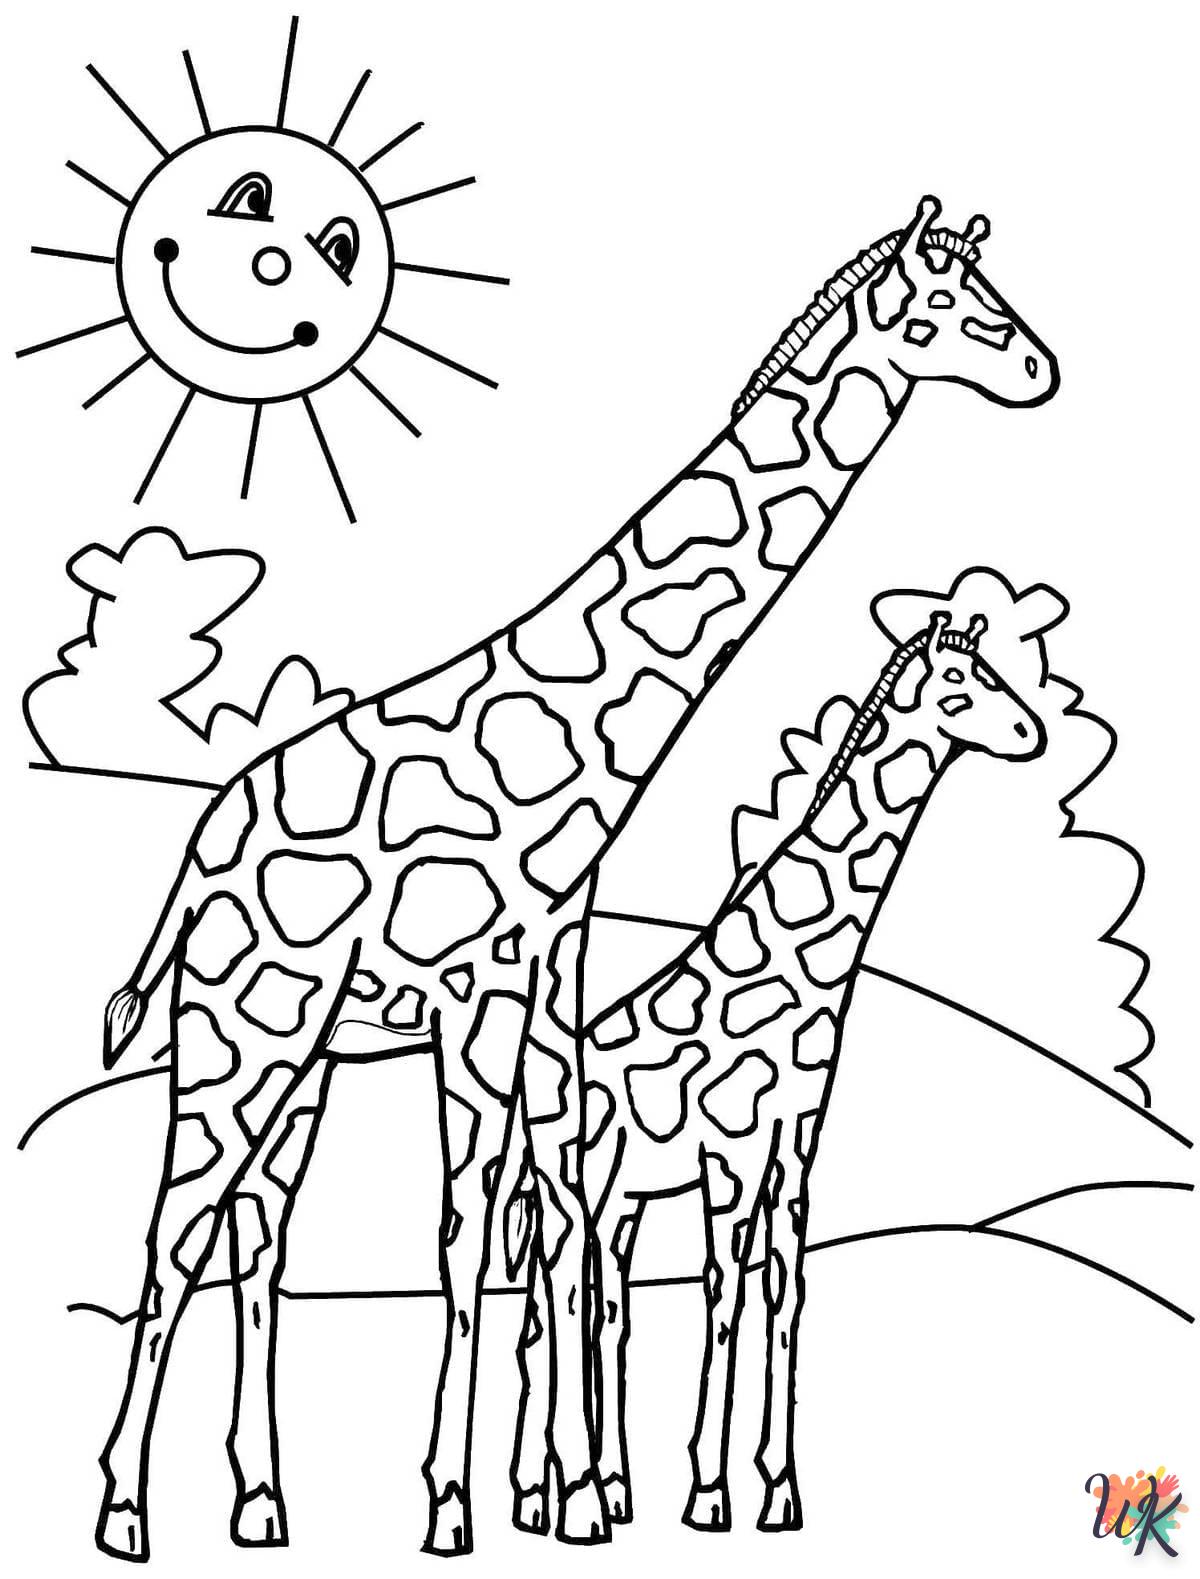 Giraffe kleurplaten9